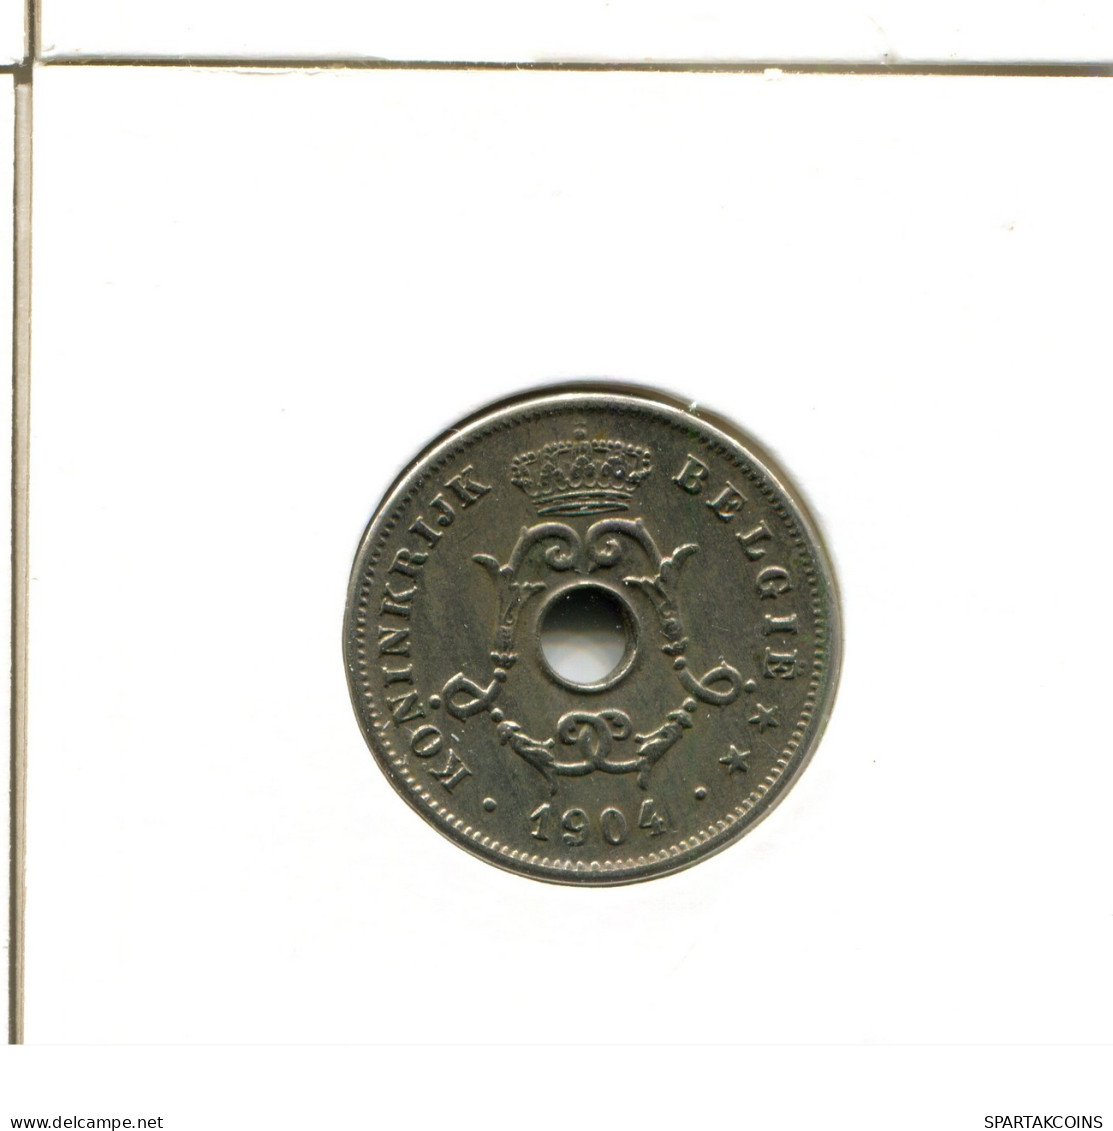 10 CENTIMES 1904 BELGIUM Coin DUTCH Text #AX351.U.A - 10 Cent